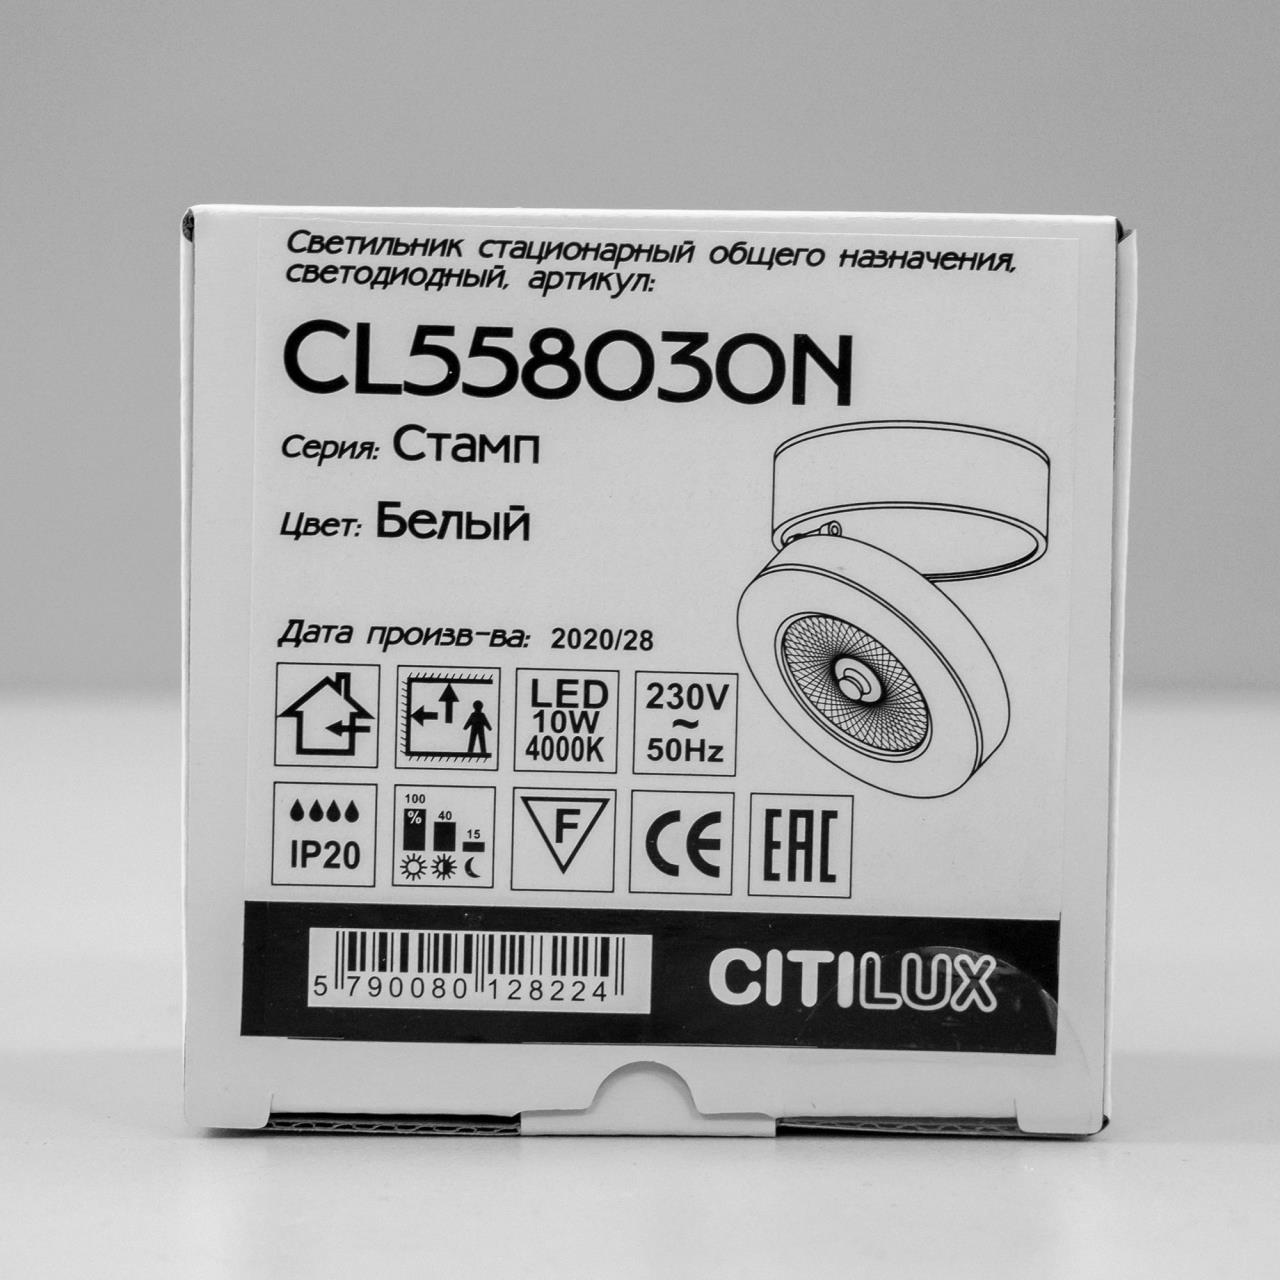 CL558030N